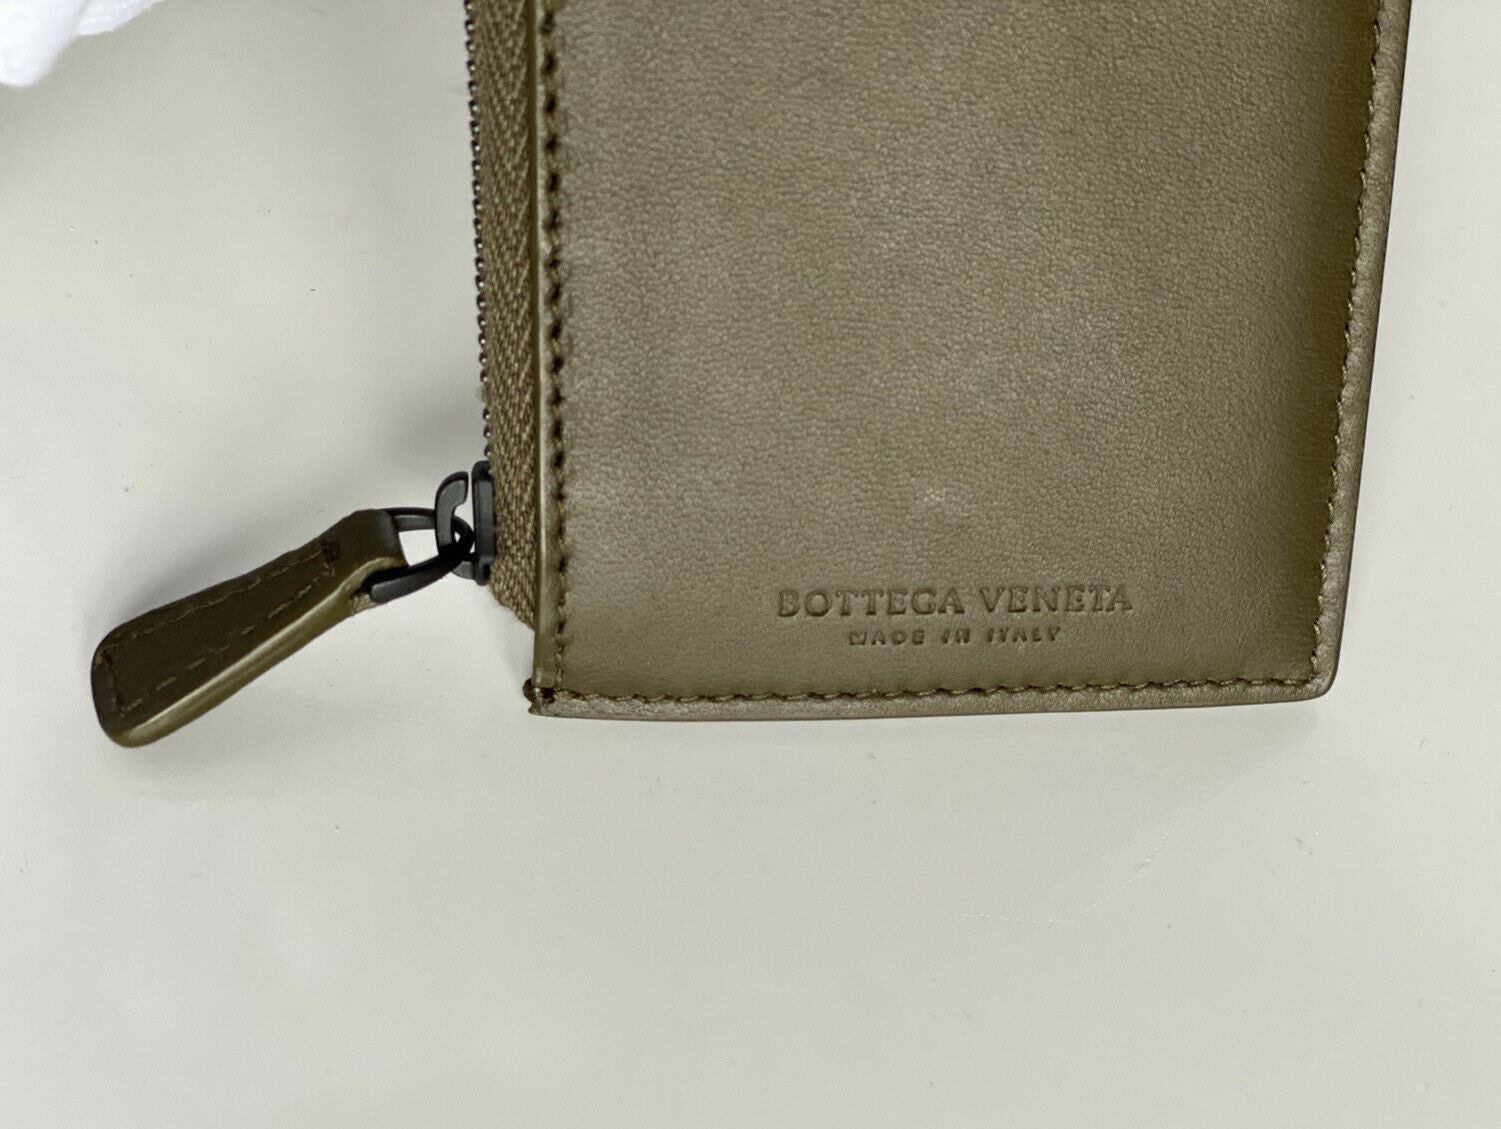 NWT 390 долларов США Bottega Veneta Intrecciato Кожаный чехол для карт наппа с застежкой-молнией в клетку тартан 566752 